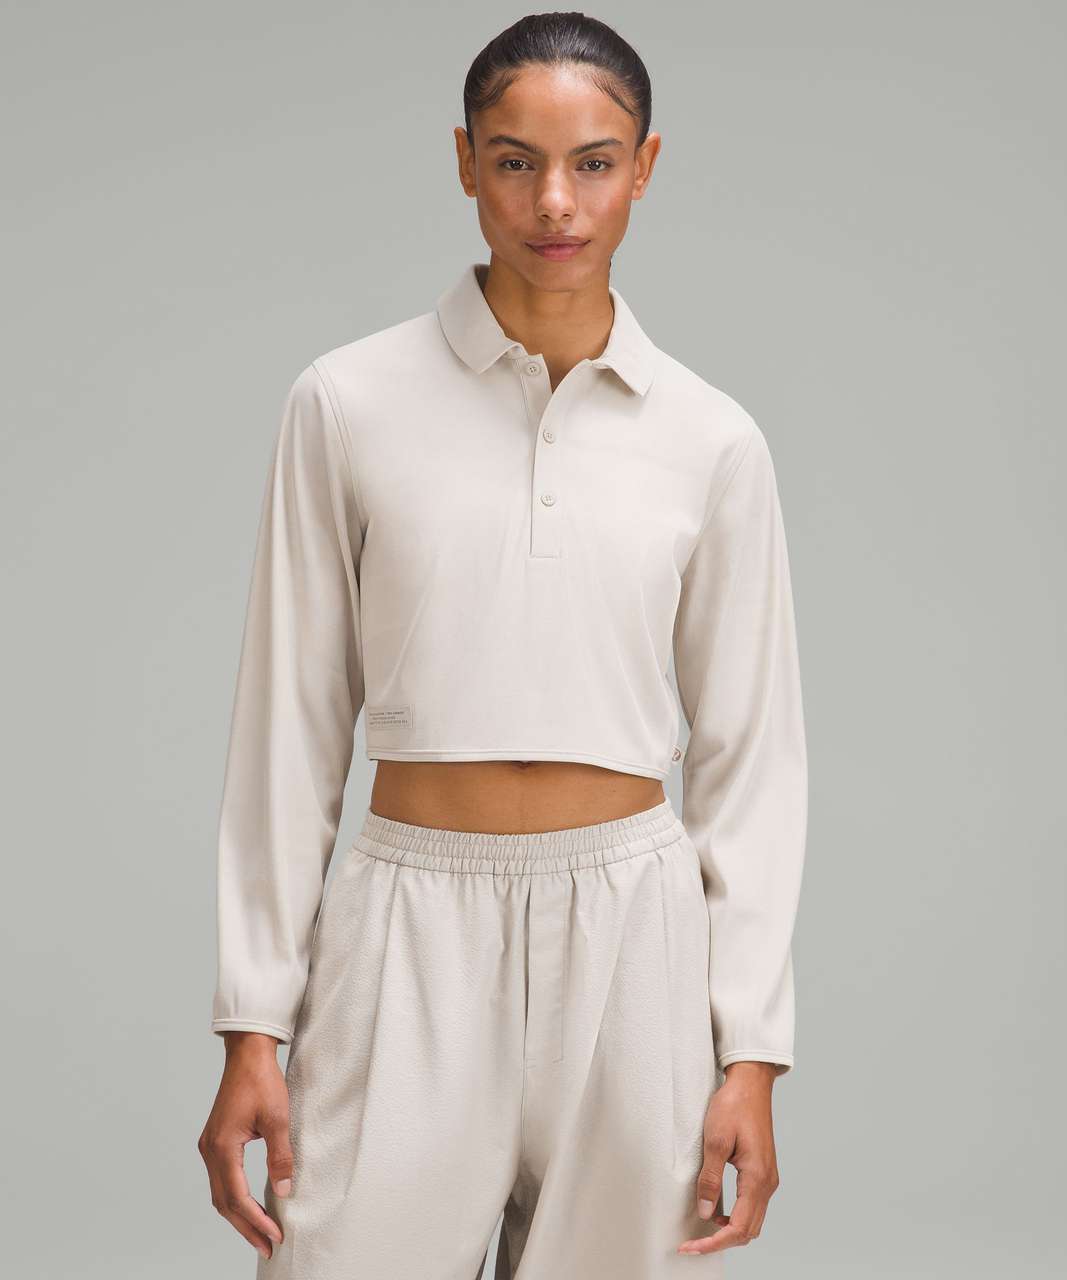 Lululemon lab Cupro Cropped Long-Sleeve Polo Shirt - Dove Grey